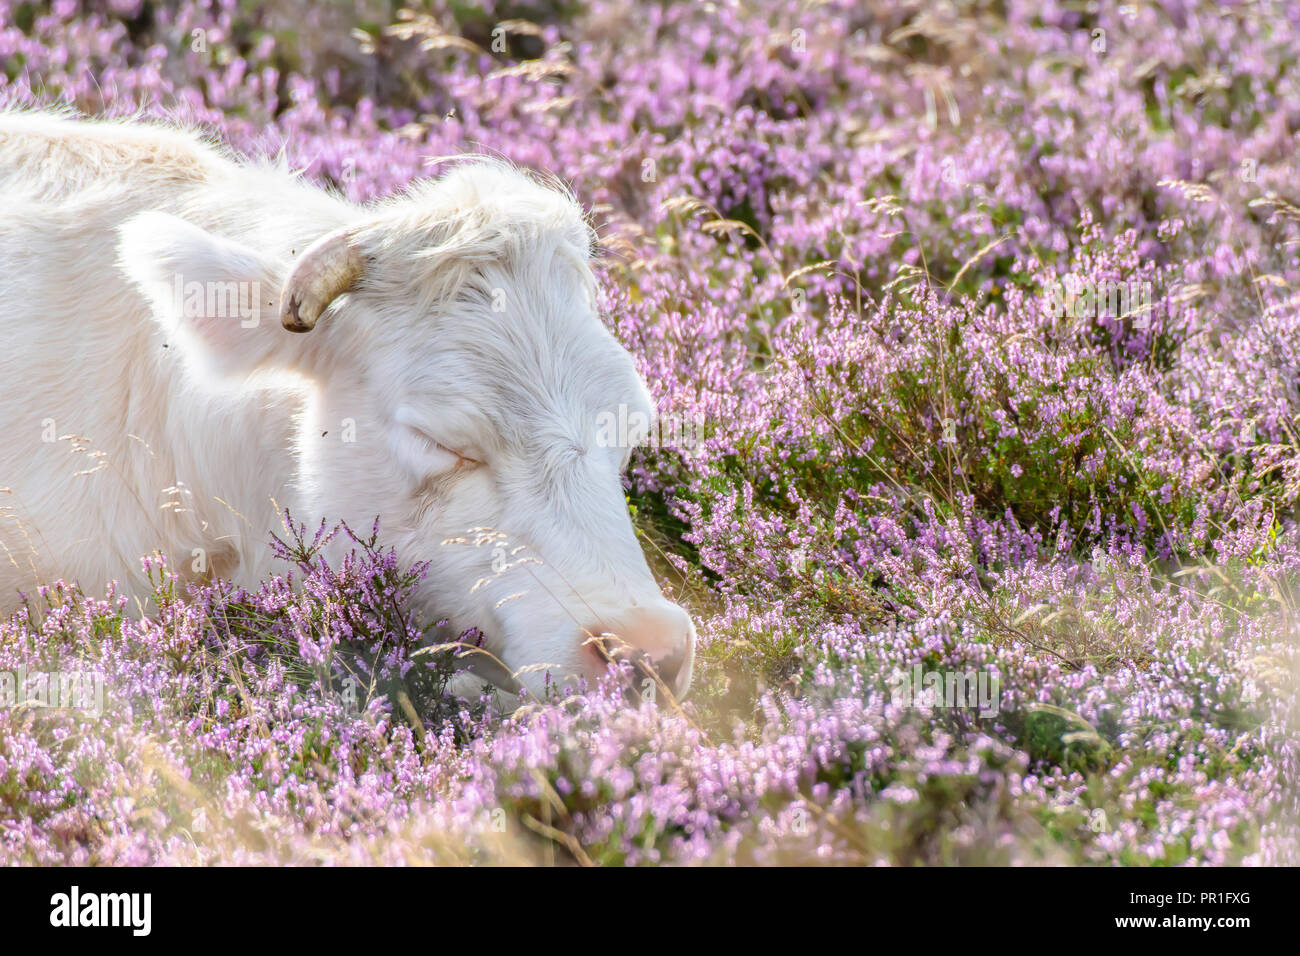 Vacca bianca dormire sul campo coperto con vibrante viola heather flowers.Organic agricoltura nelle zone rurali del Regno Unito.pisolino pomeridiano.I sogni dolci.spazio copia.pascolo. Foto Stock